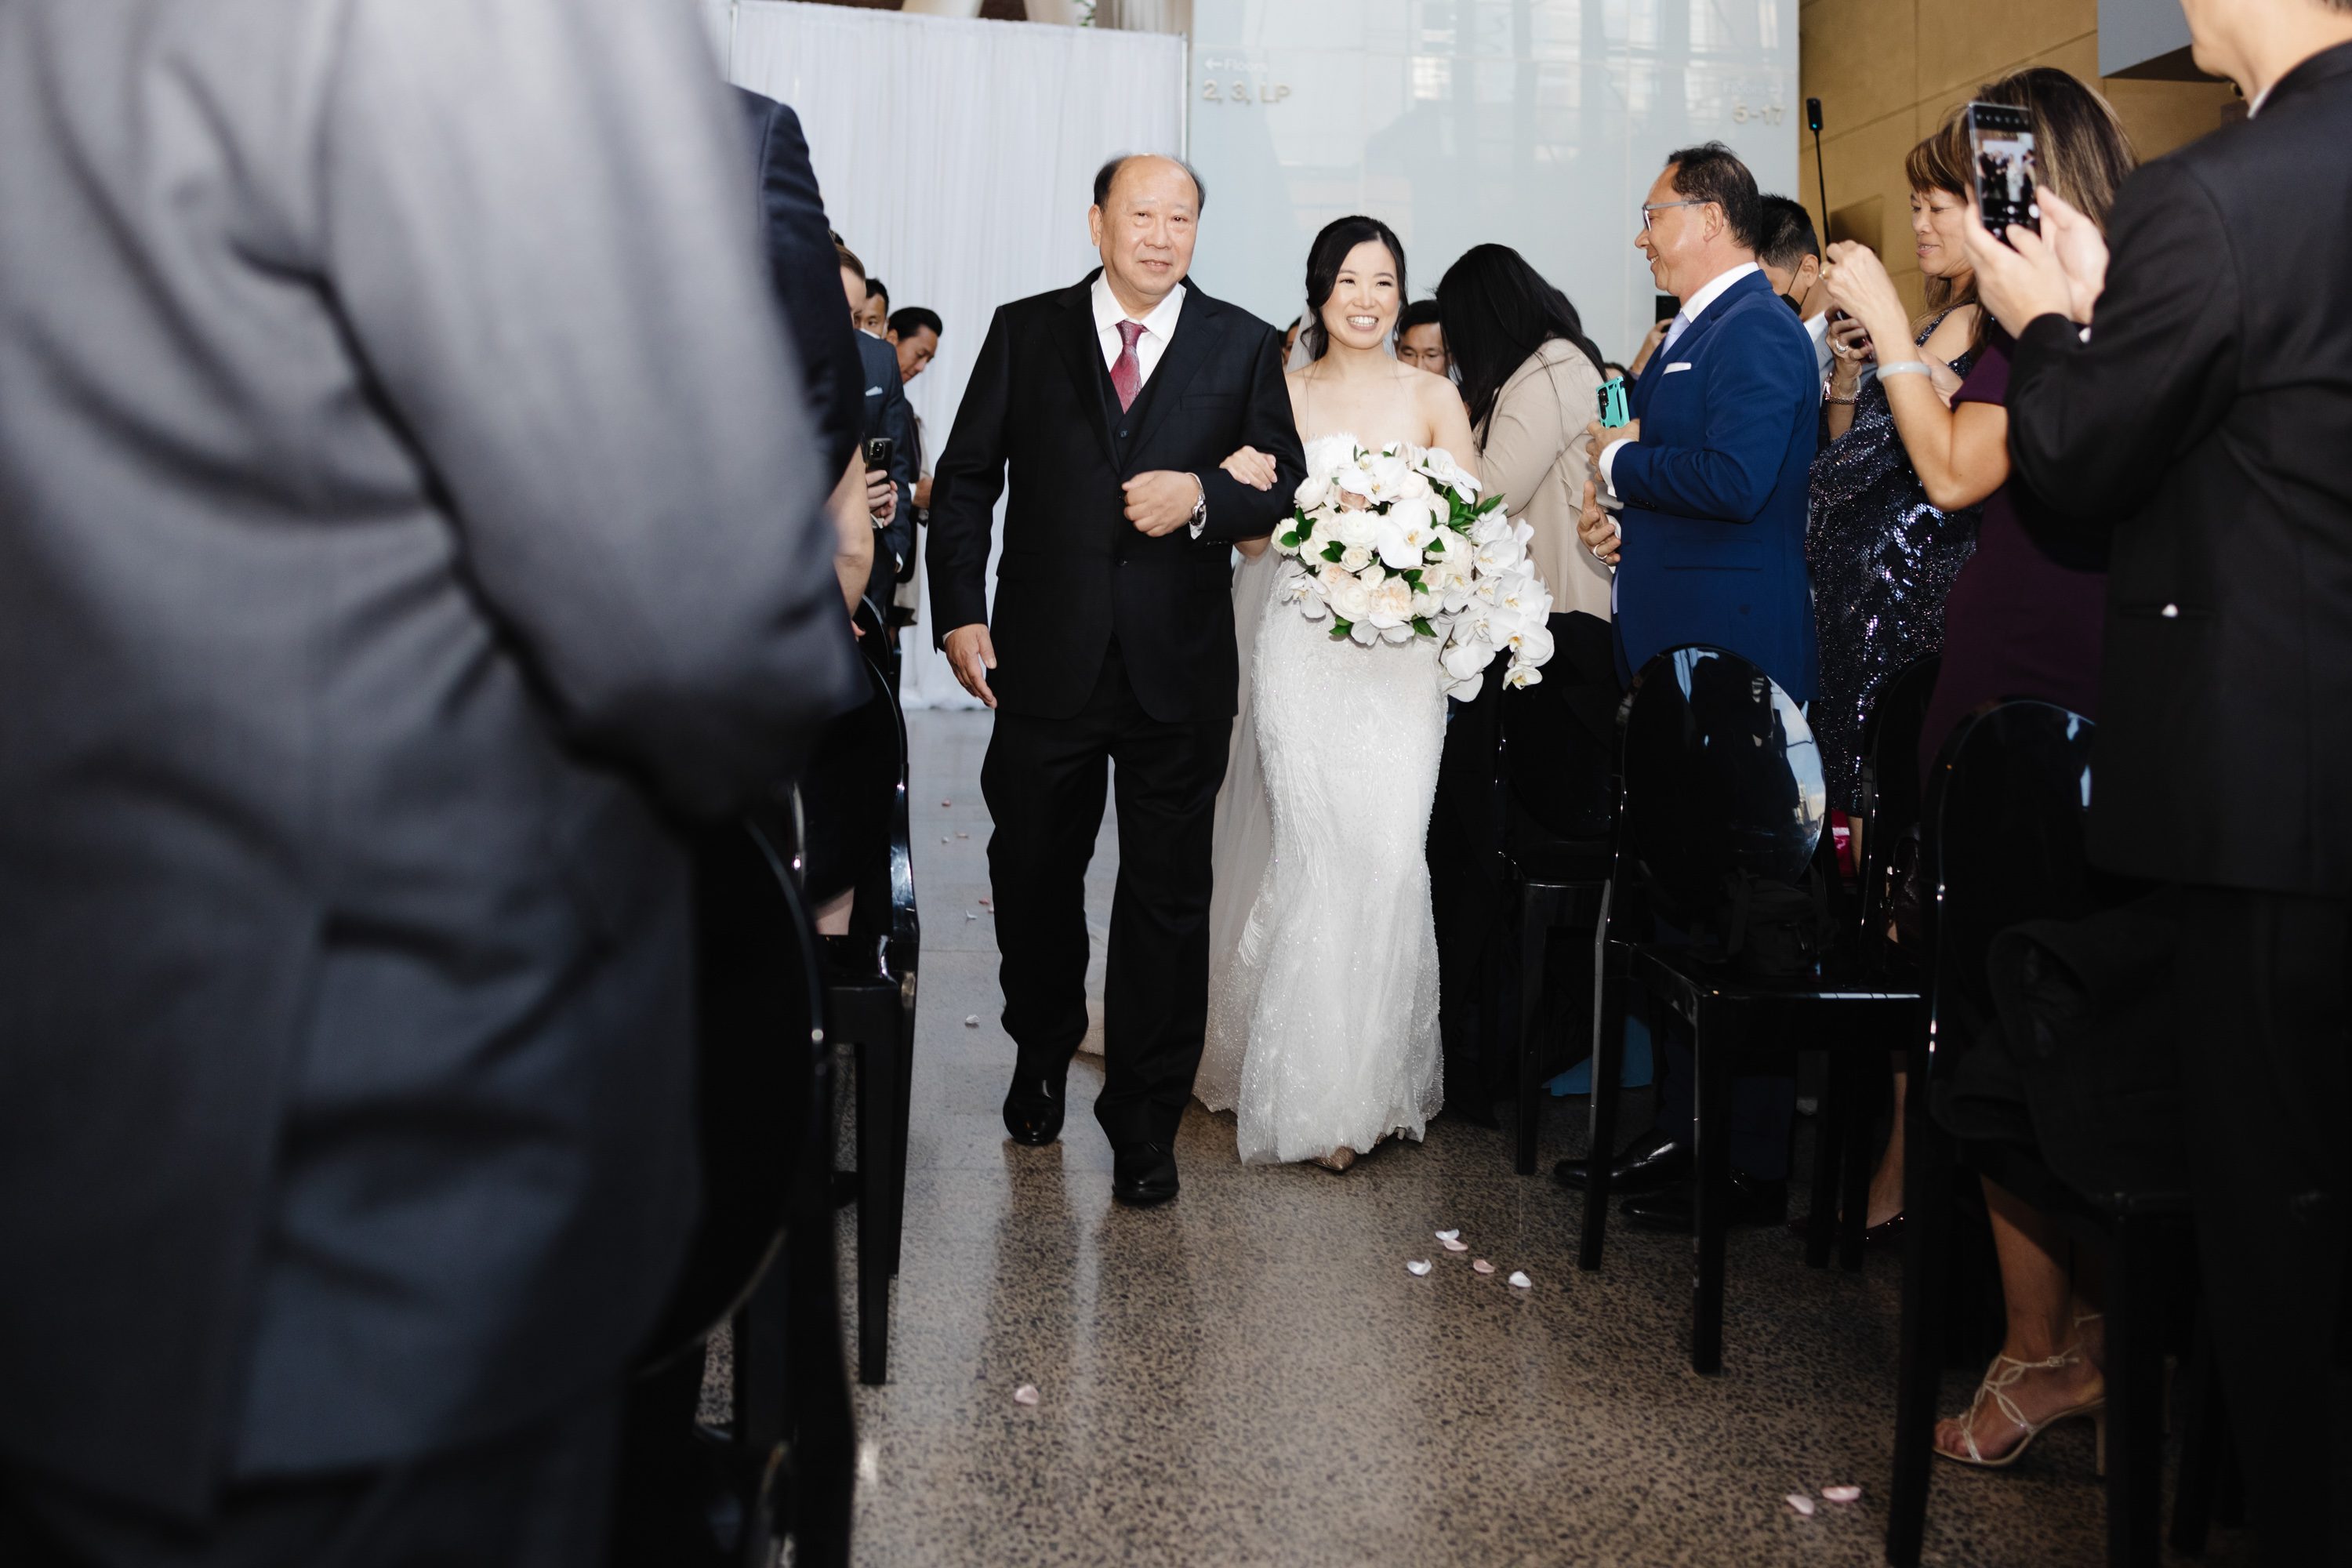 Ricarda Toronto bride and groom